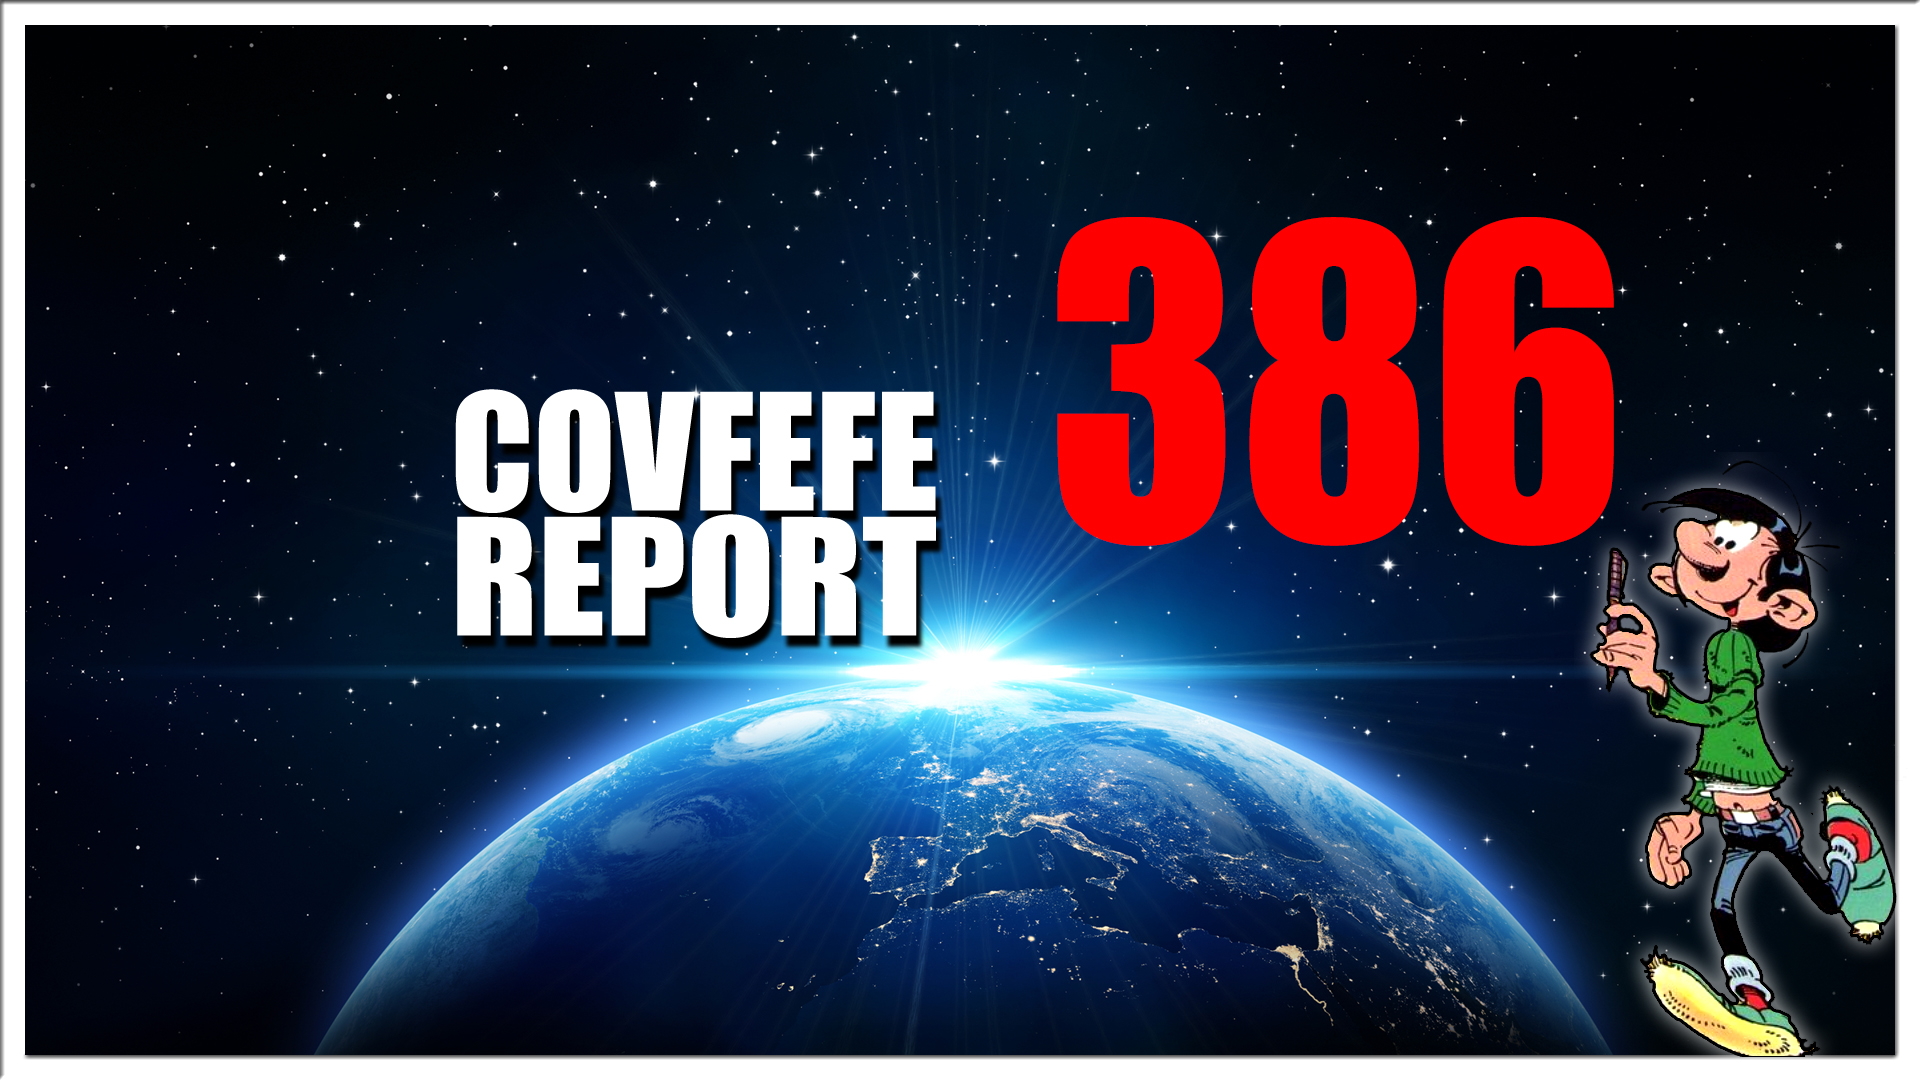 Covfefe Report 386. These people are stupid, Helden van de Buitenhoeve, Grens bereikt